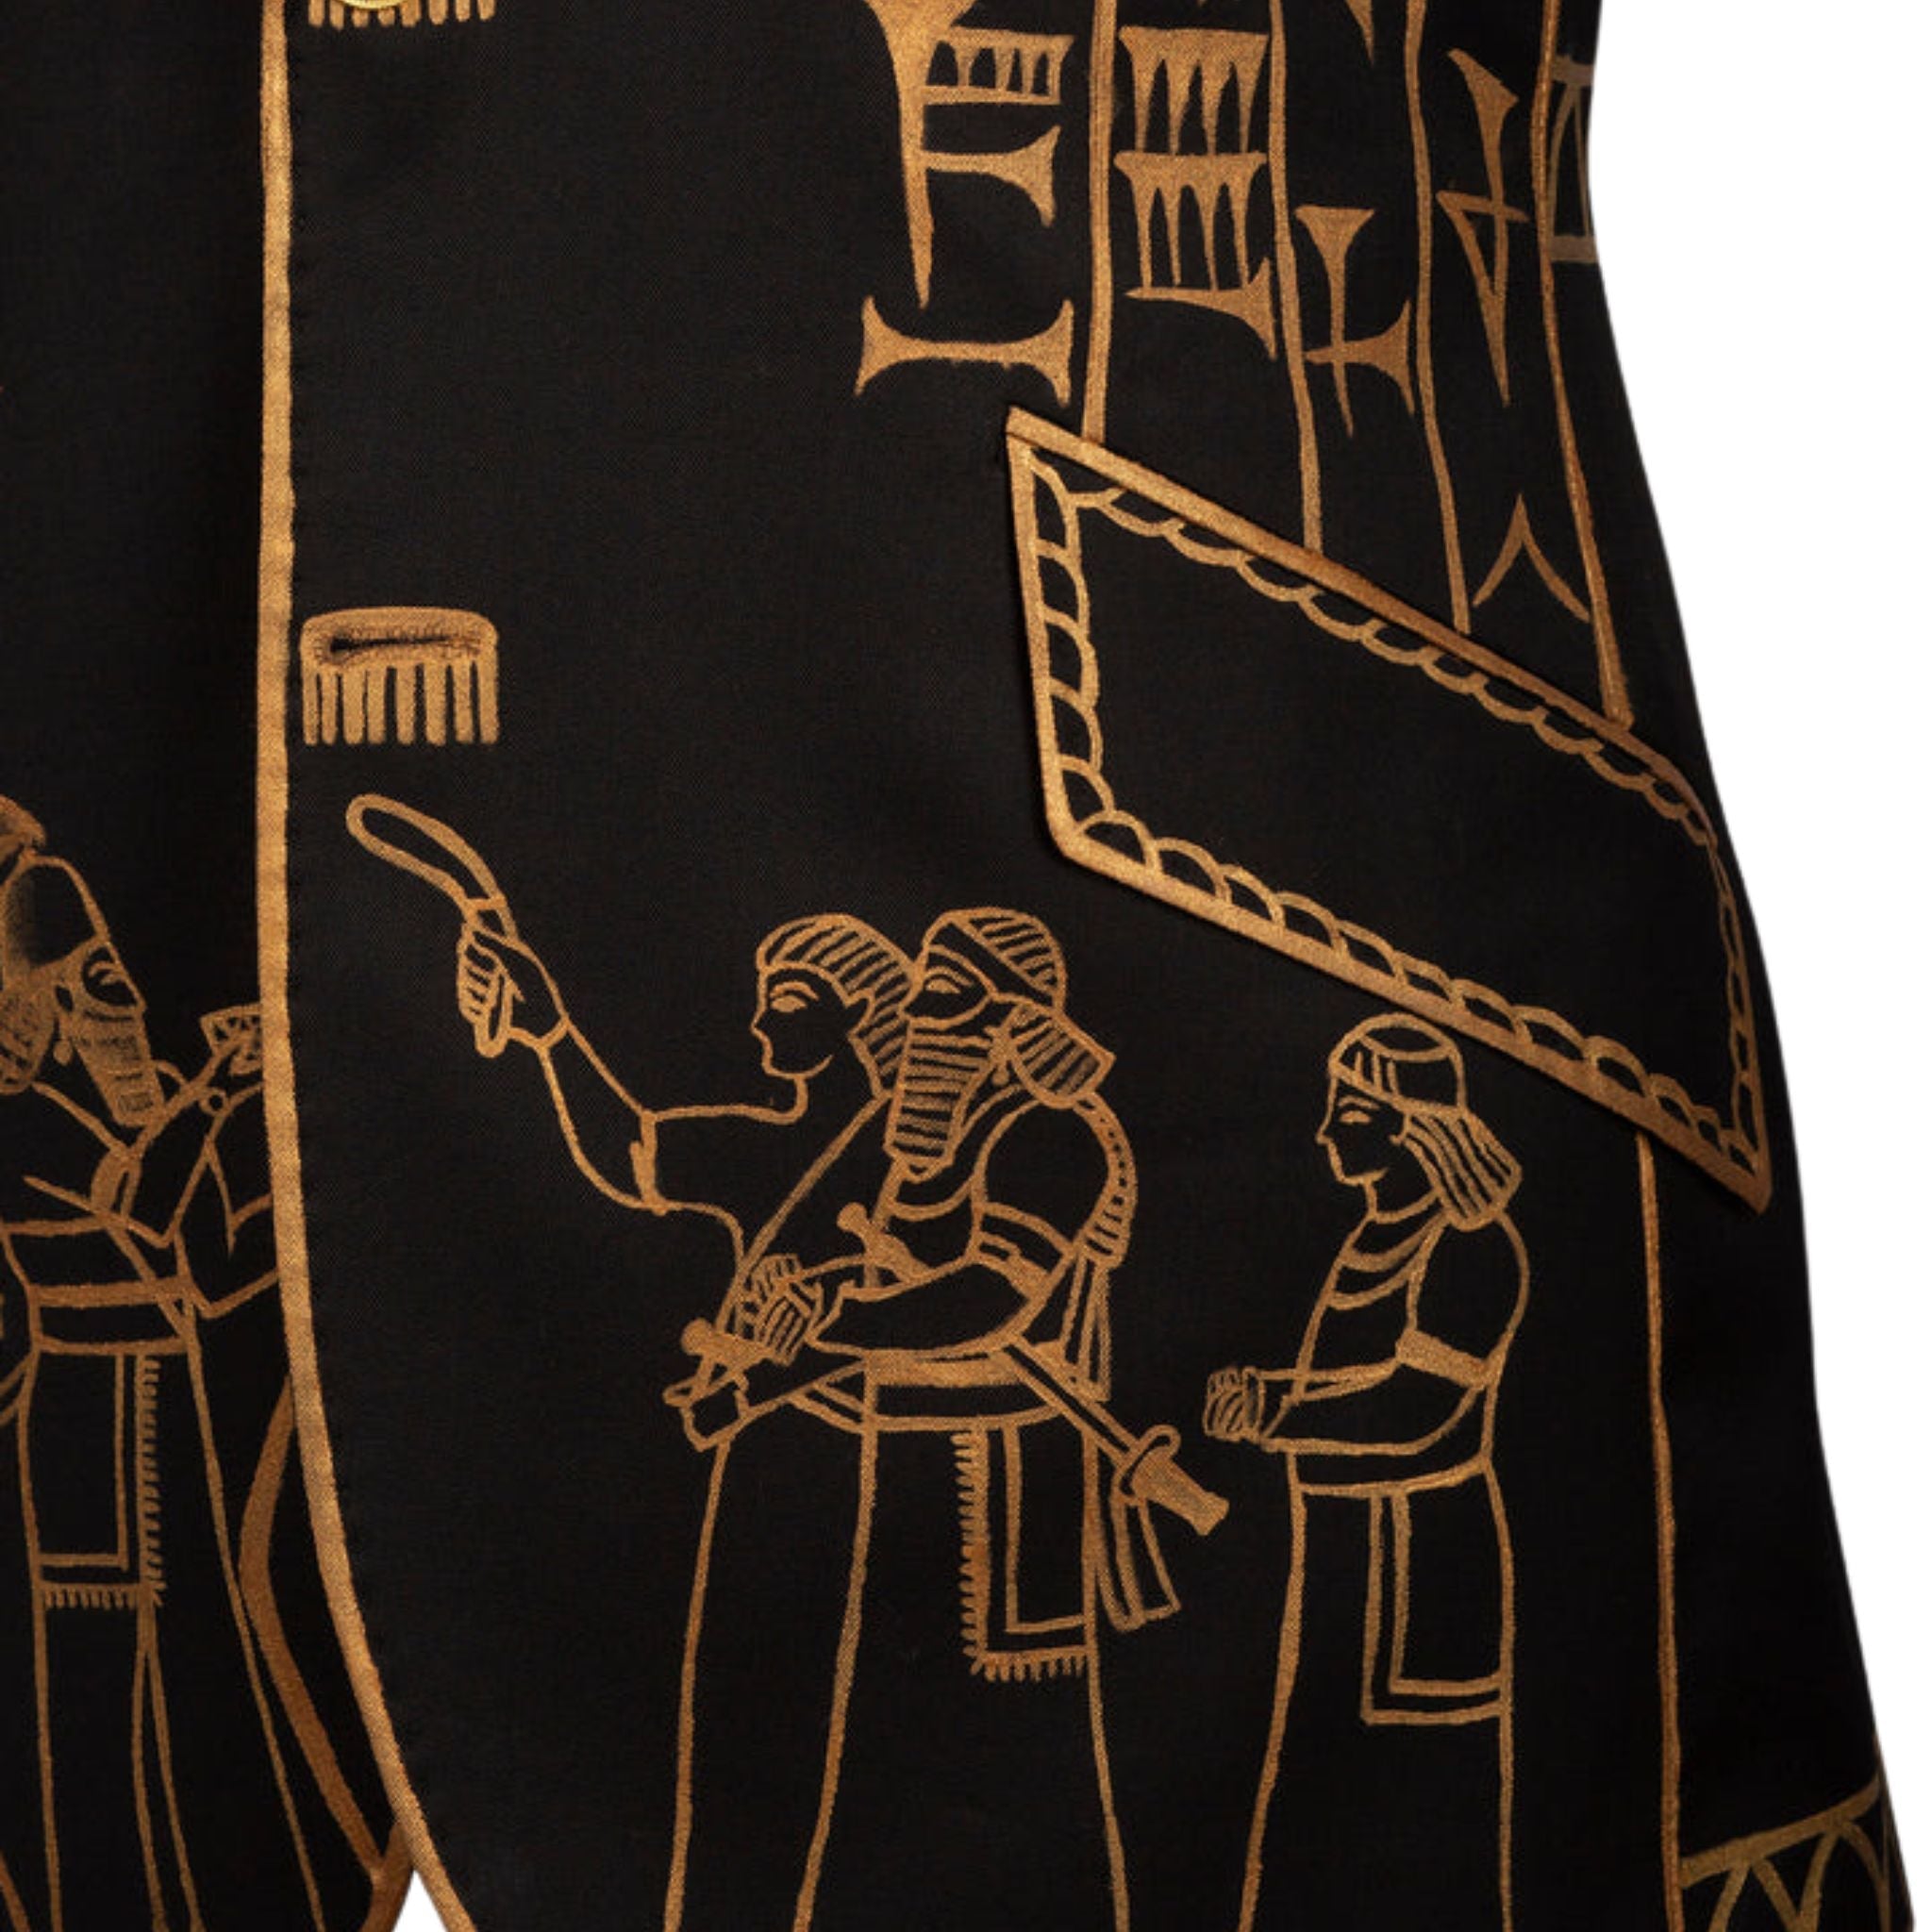 Men's Hand-painted Ancient Sumerian Cuneiform Motif Peak Lapel 3 Piece Suit in Black and Gold - Maison de Kingsley Couture Harmonie et Fureur Spain